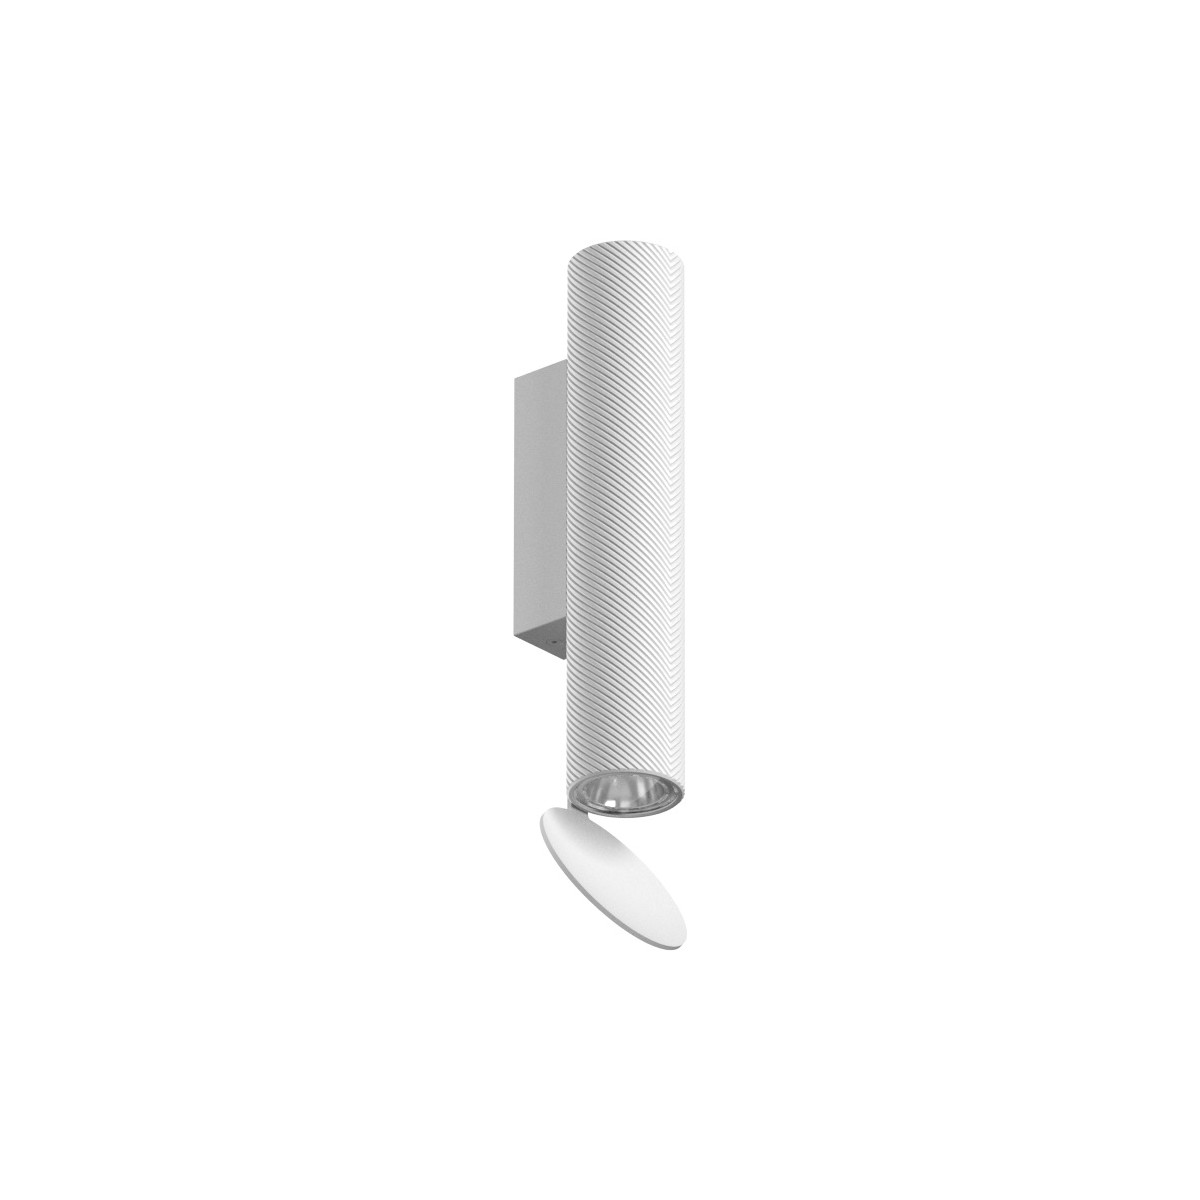 Flauta H22,5cm – Spiga, white, indoor